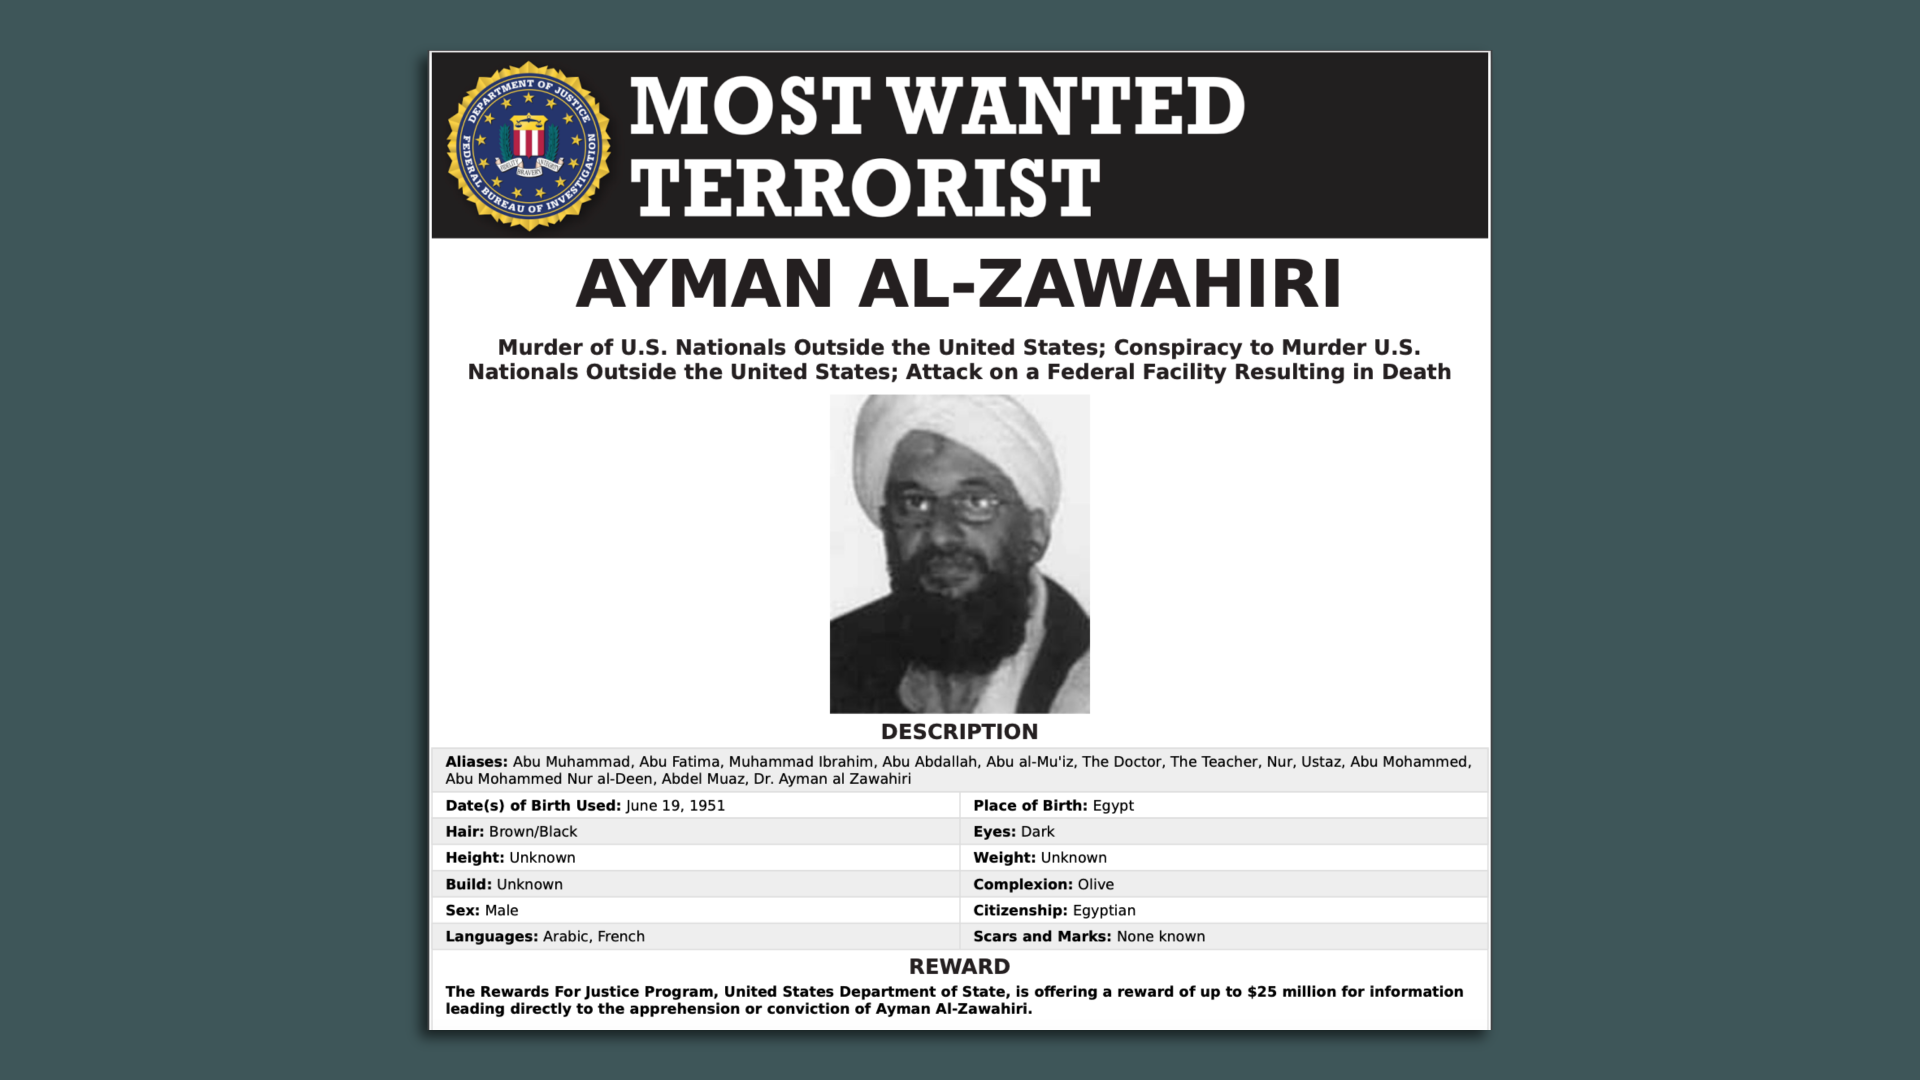 Most Wanted poster for Ayman Al-Zawahiri